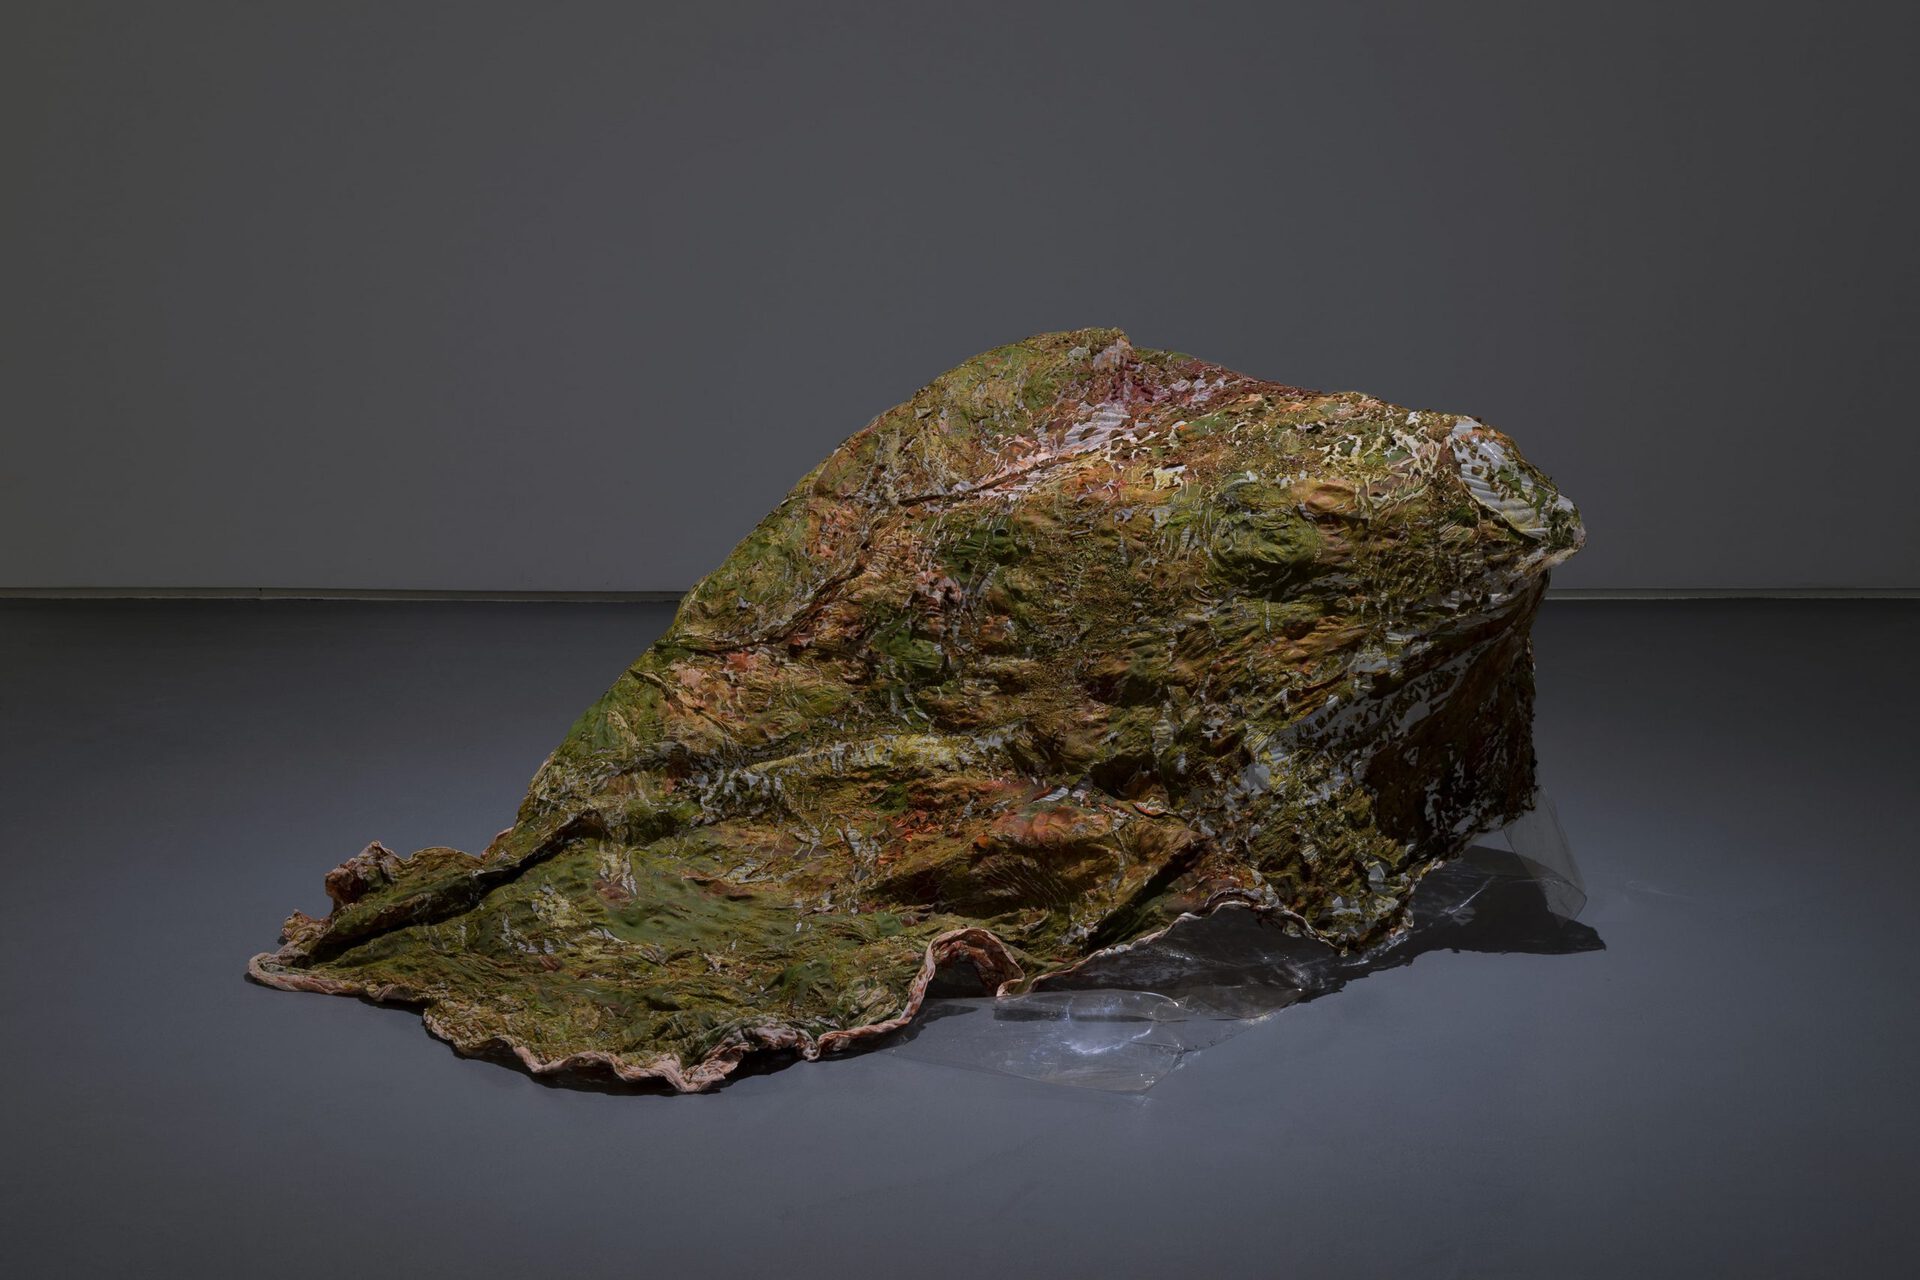 Wagehe Raufi, blob, 2019. Thermoplastic material, textiles, pigment, ink, agar-agar, water-retaining granules. 75 × 130 × 160 cm (29.5 × 51.2 × 63 in)